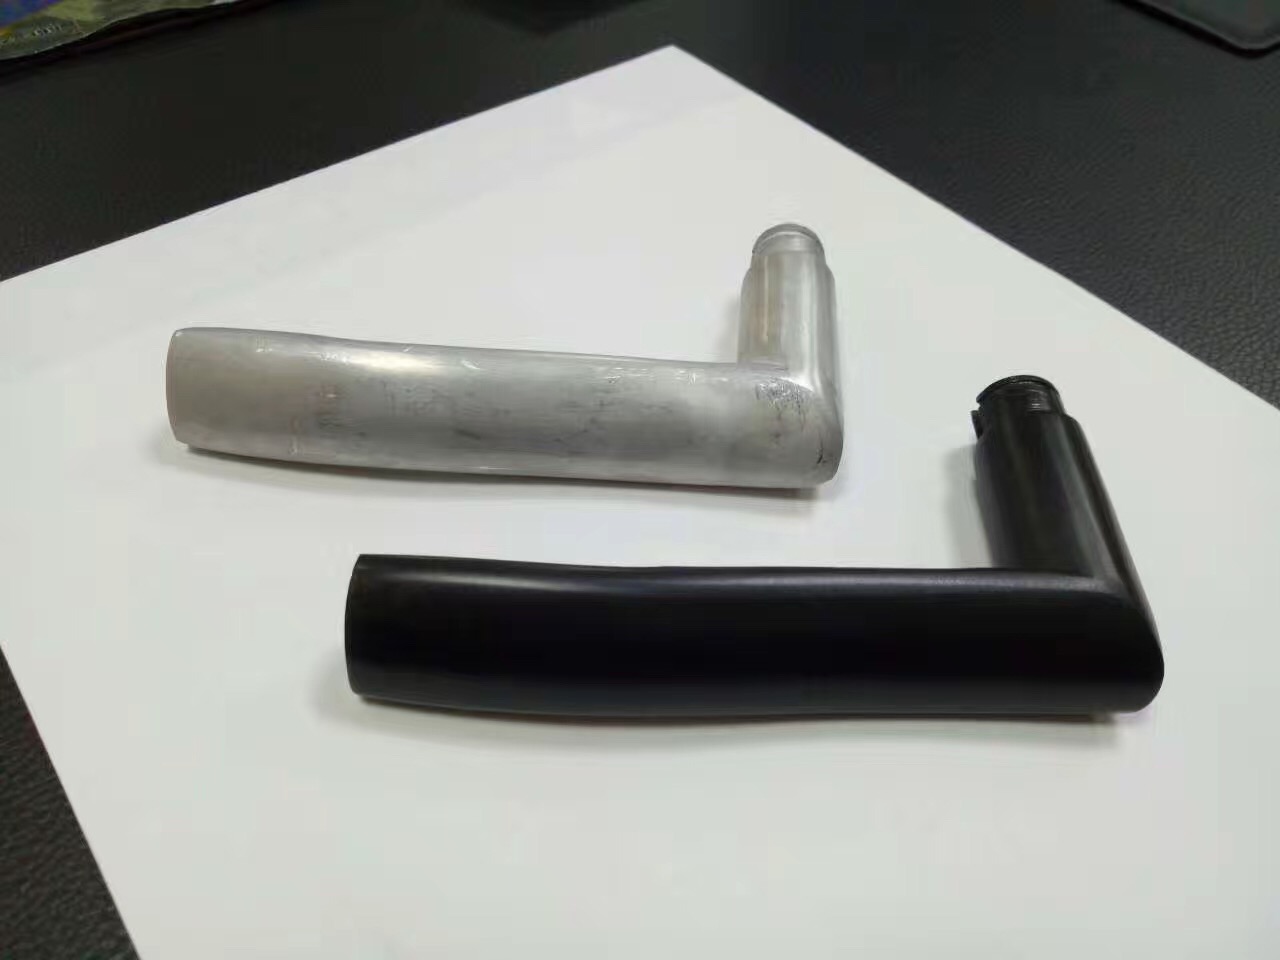 常温铝材发黑剂OY-125A ，能够获得均匀且良好的黑亮型化学氧化膜，是理想的装饰性膜层